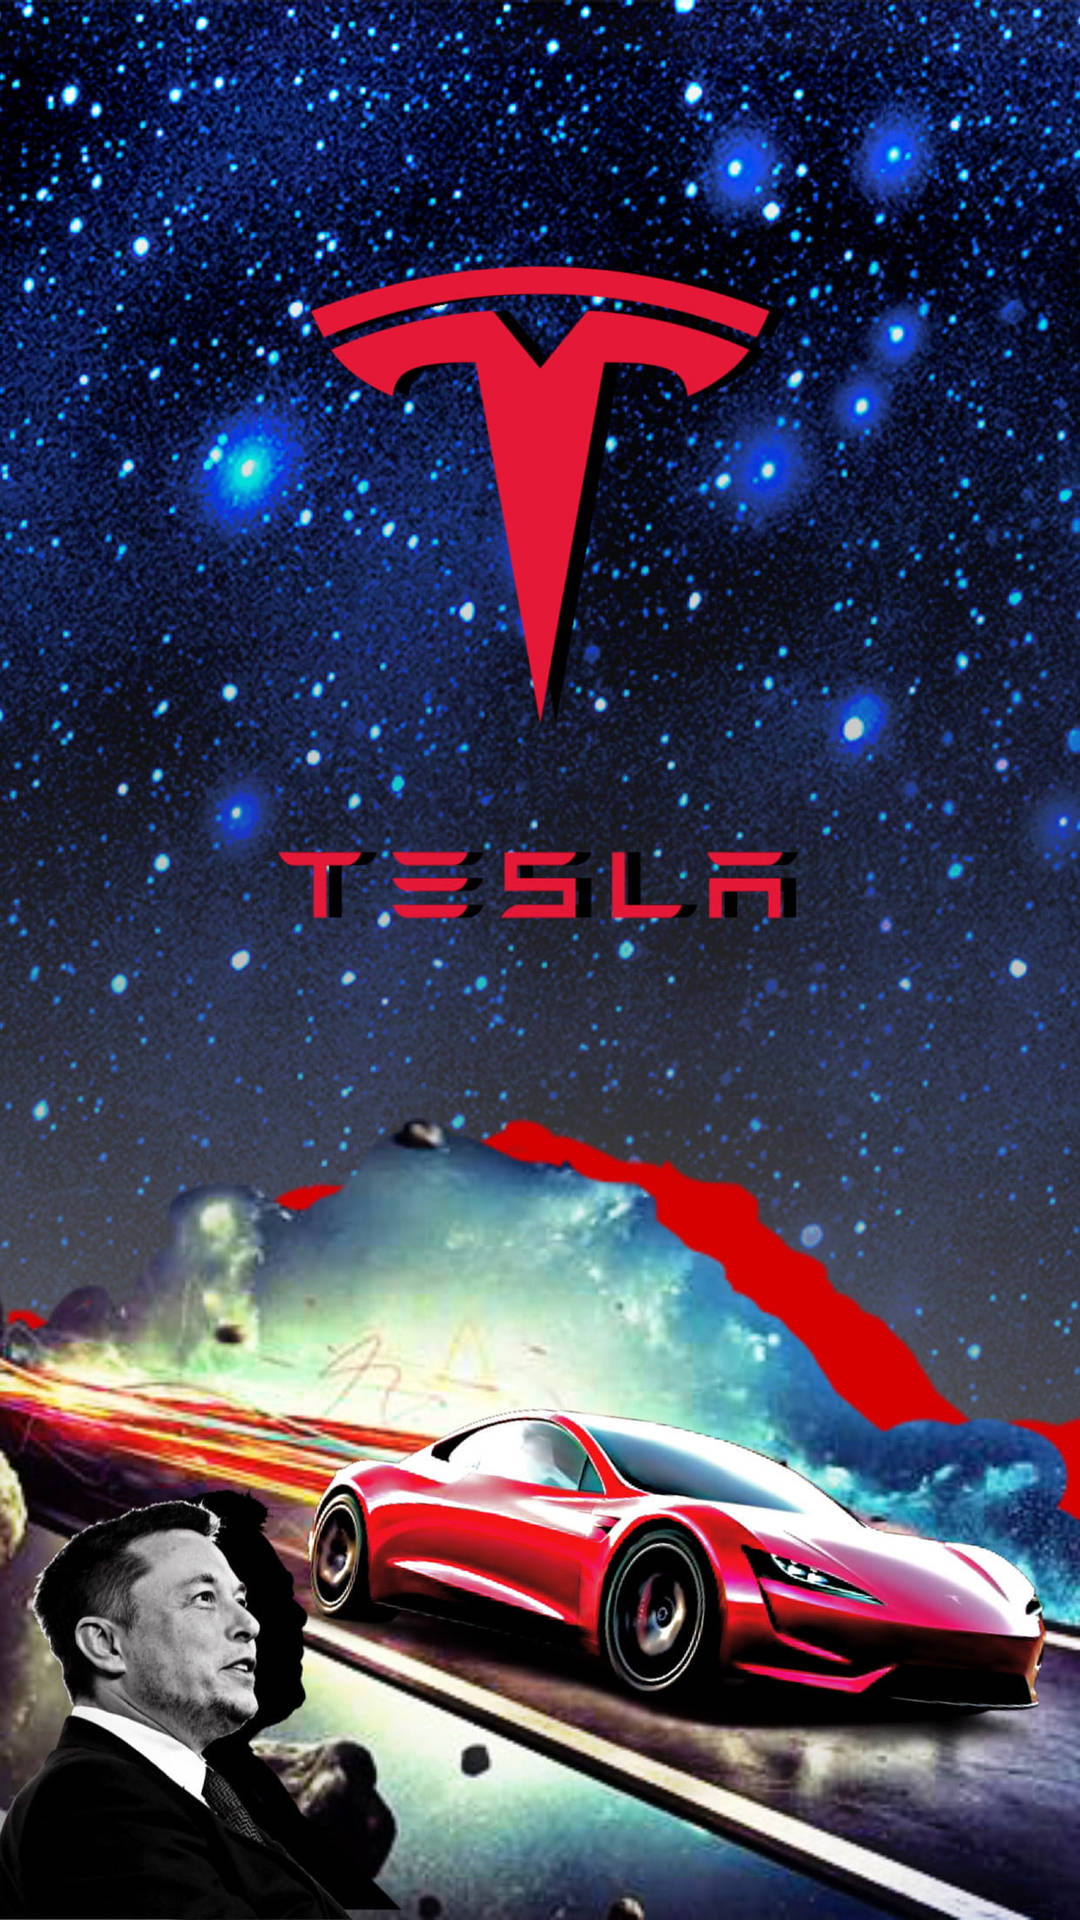 Elon Musk Tesla Car Fan Art Wallpaper